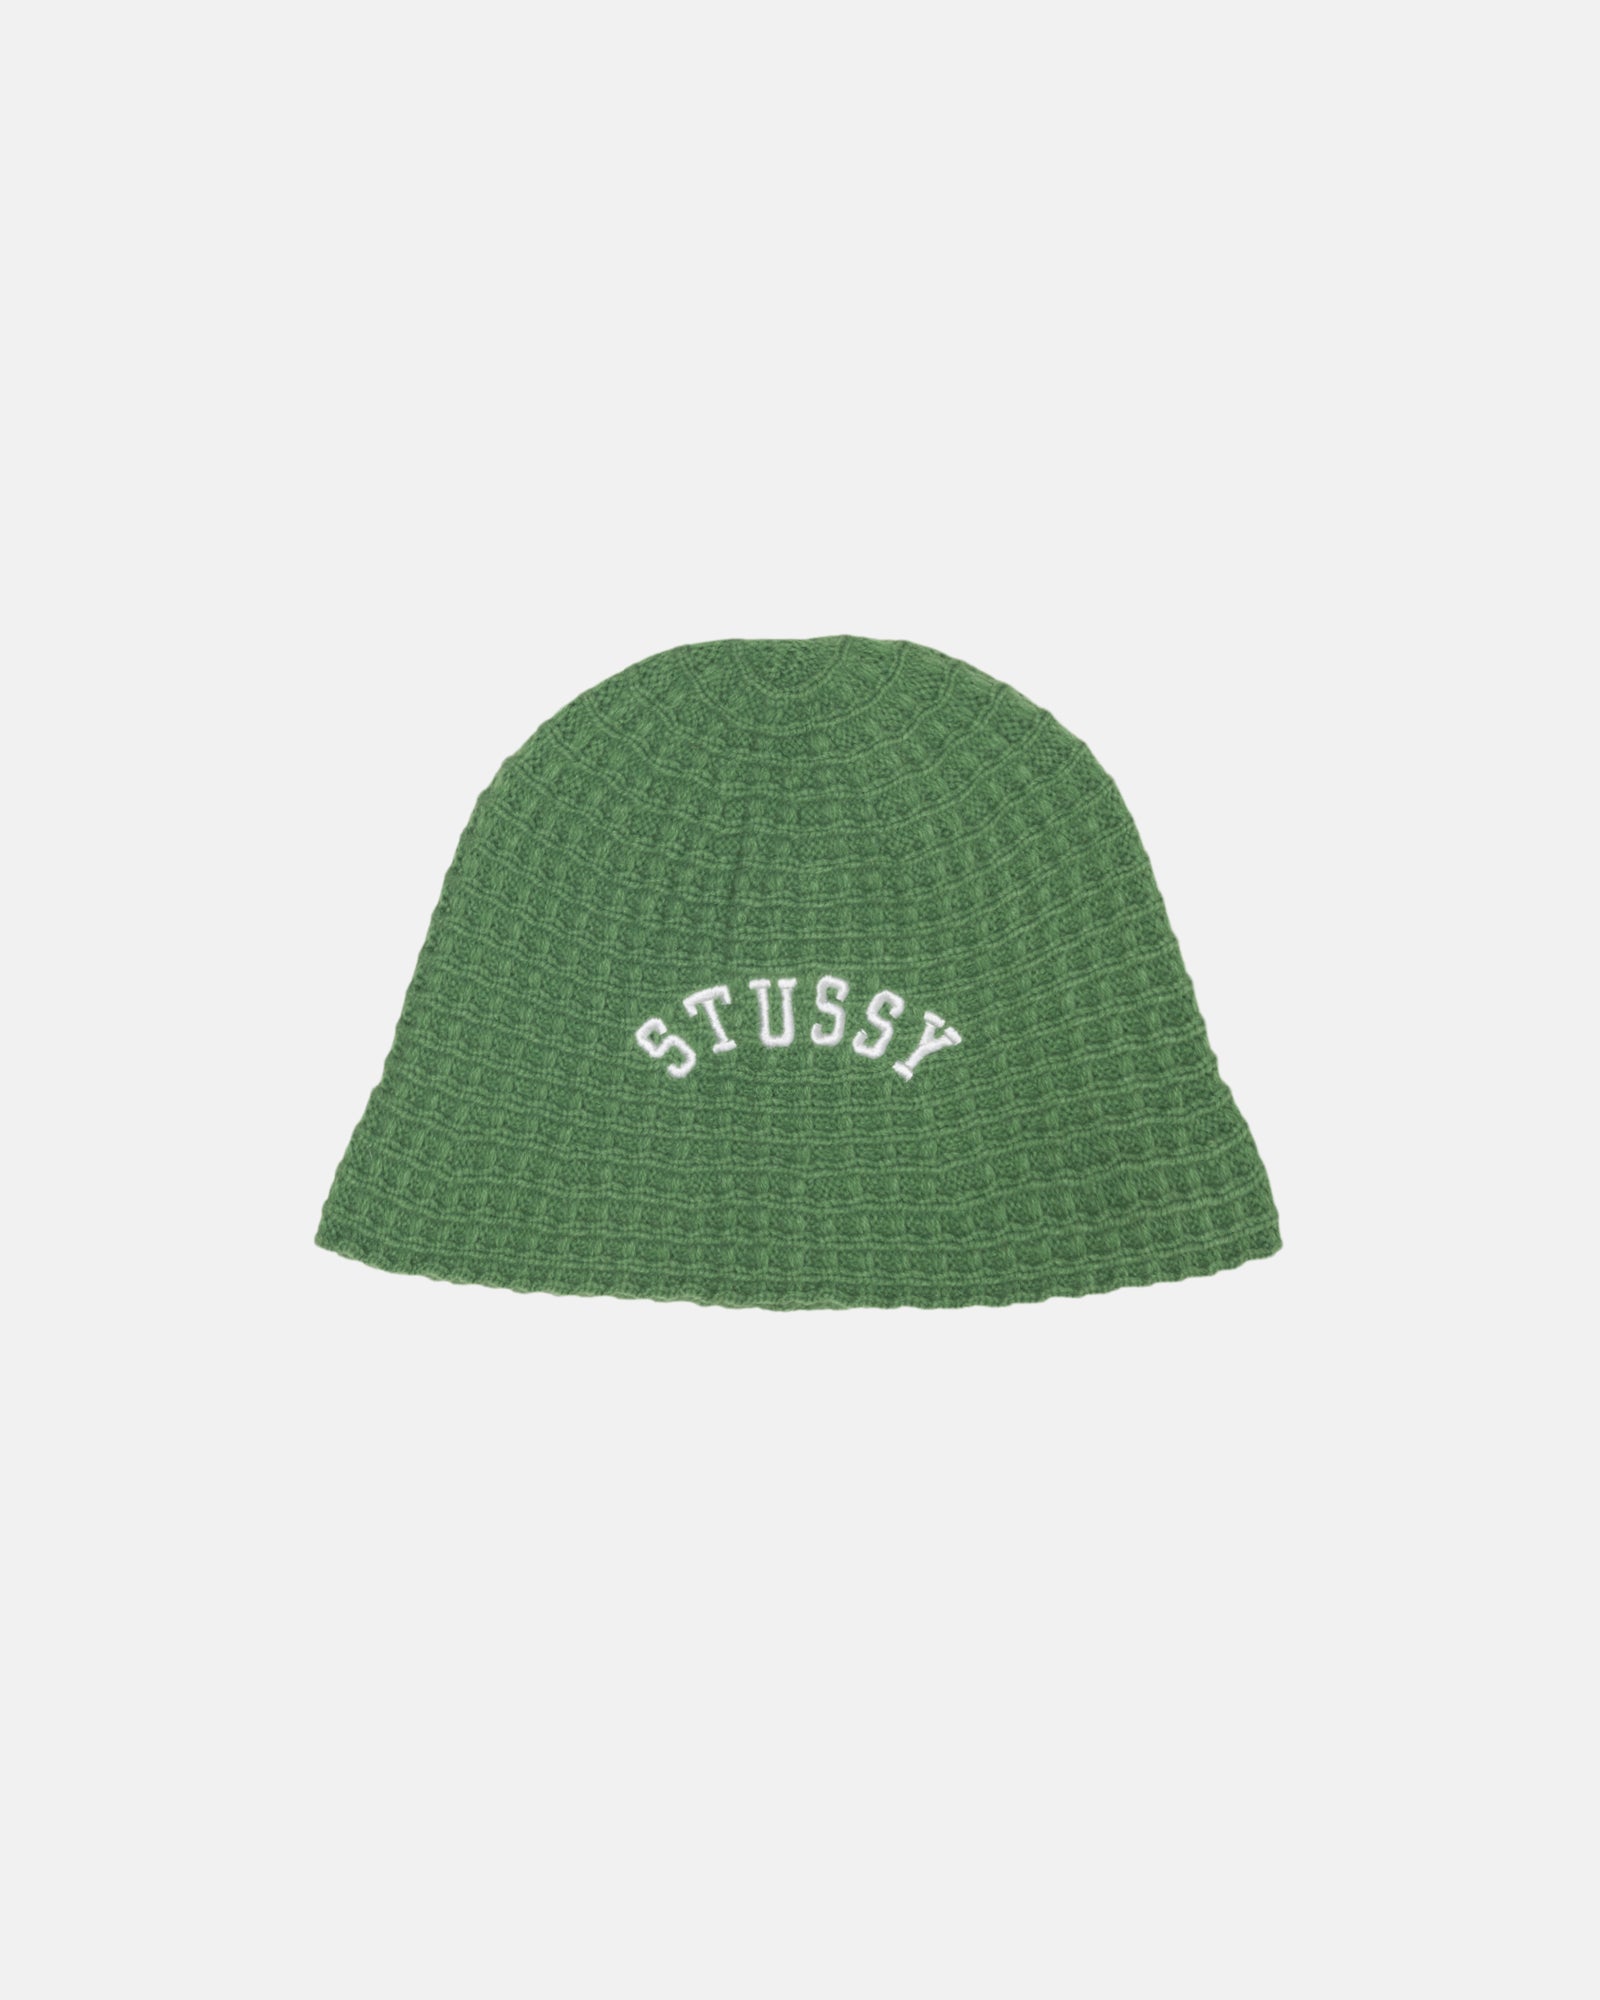 Stüssy Bucket Hat Waffle Knit Green Headwear